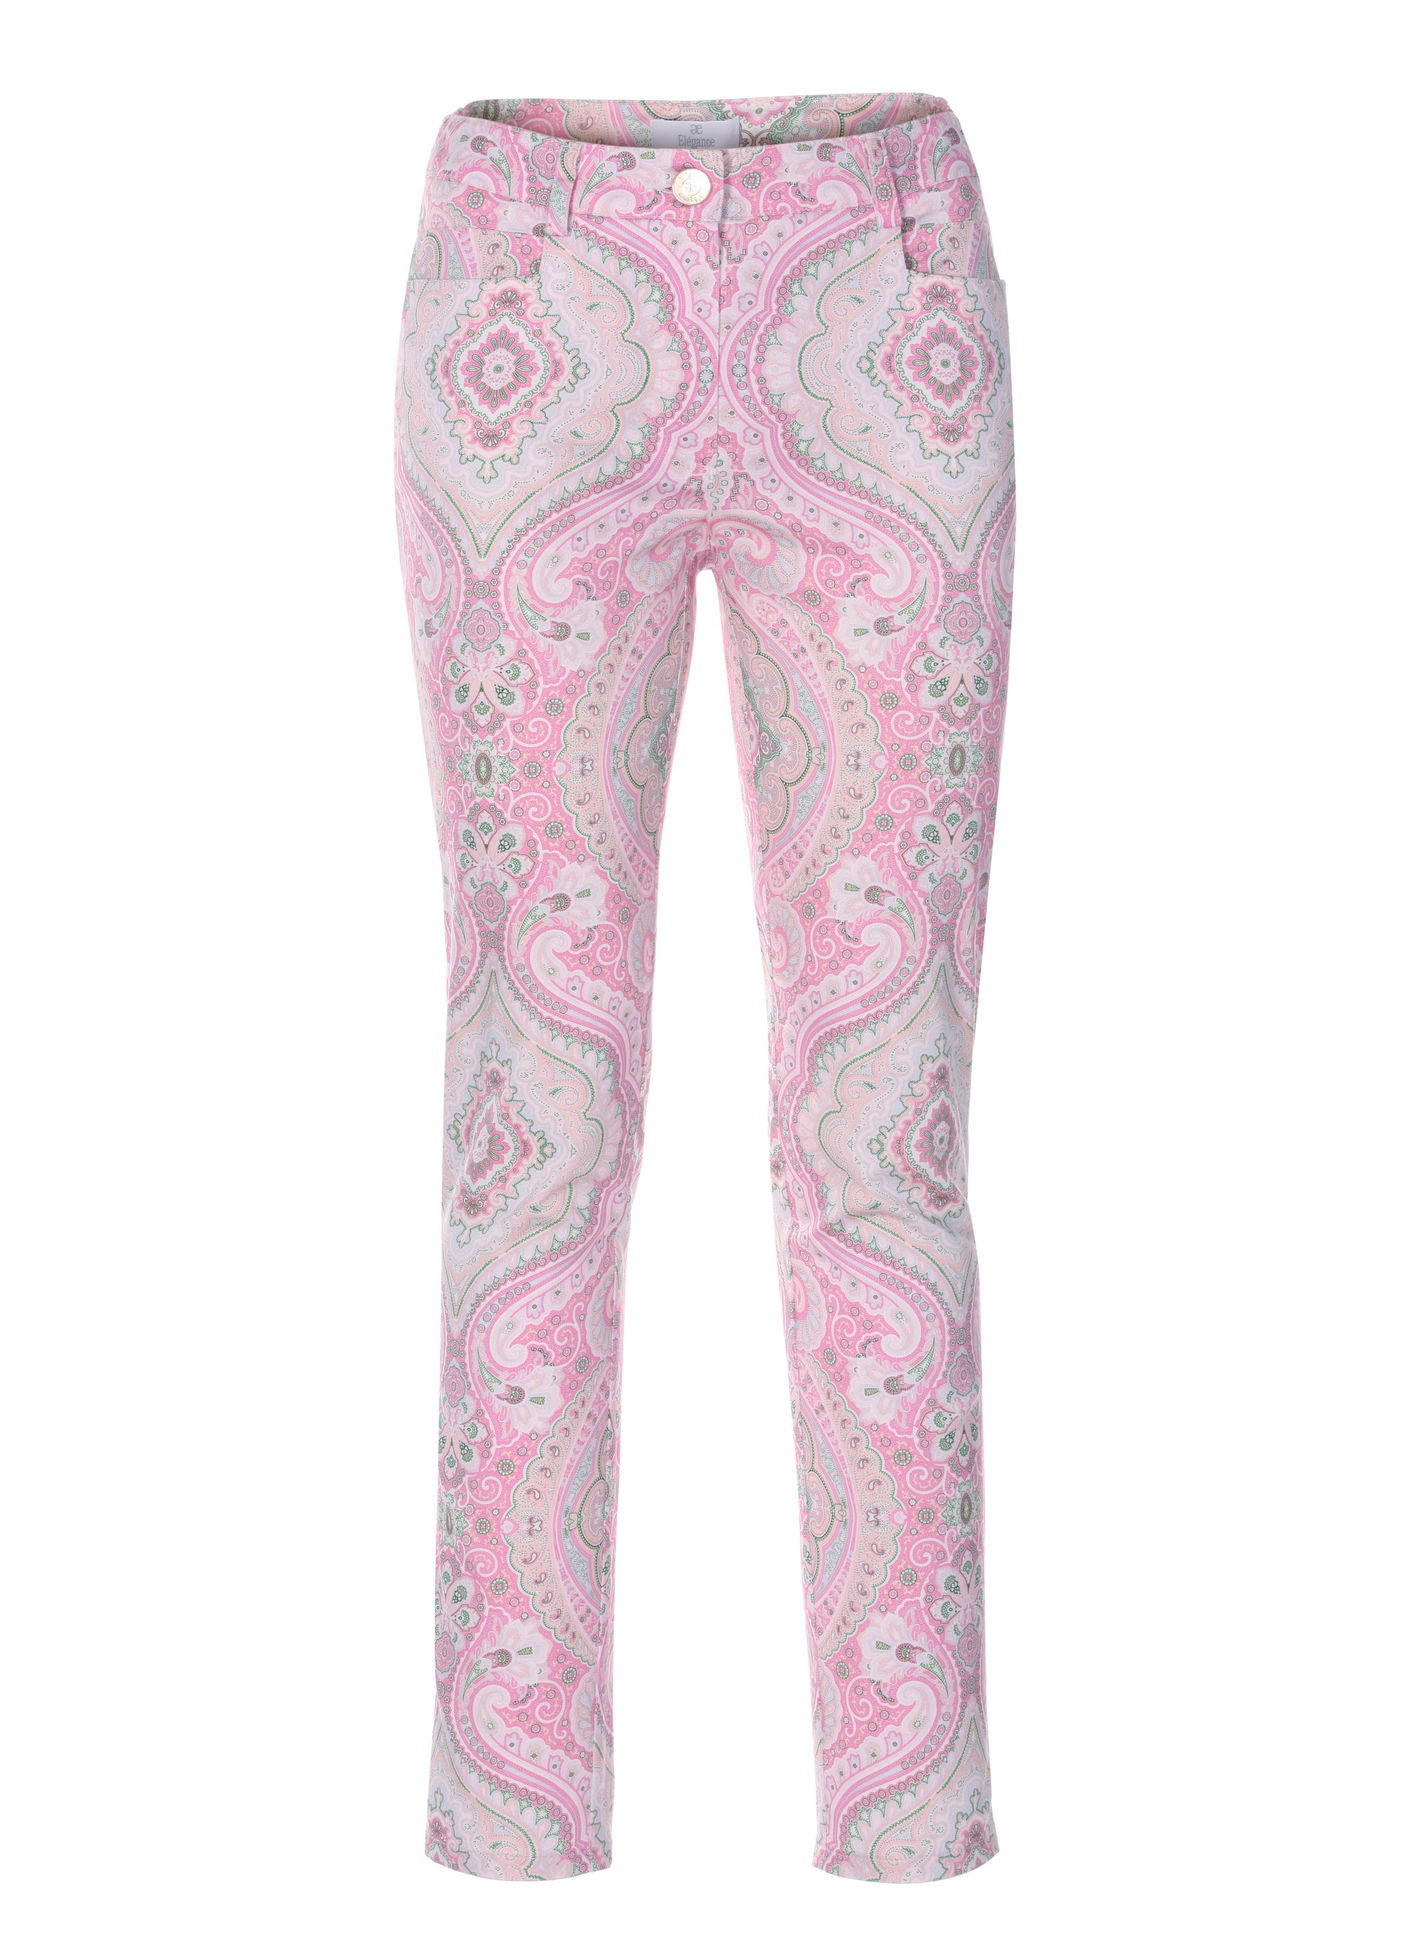 Pantalon Elégance Paris - Pantalon en coton rose multicolore Elégance